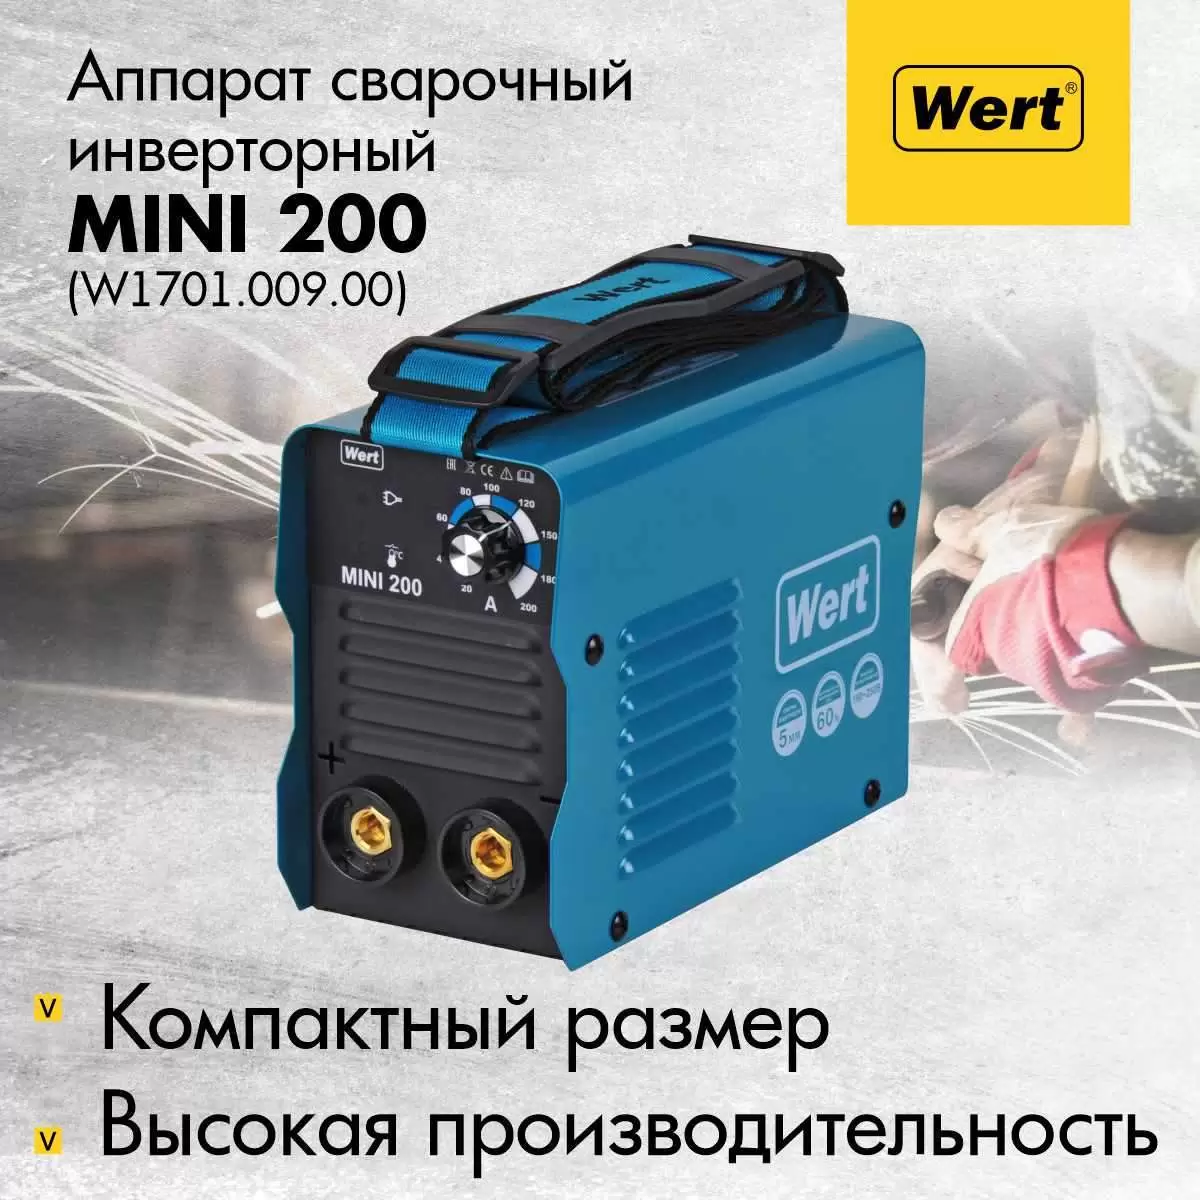 Инверторный сварочный аппарат WERT MINI 200, W1701.009.00 - VLARNIKA в Донецке